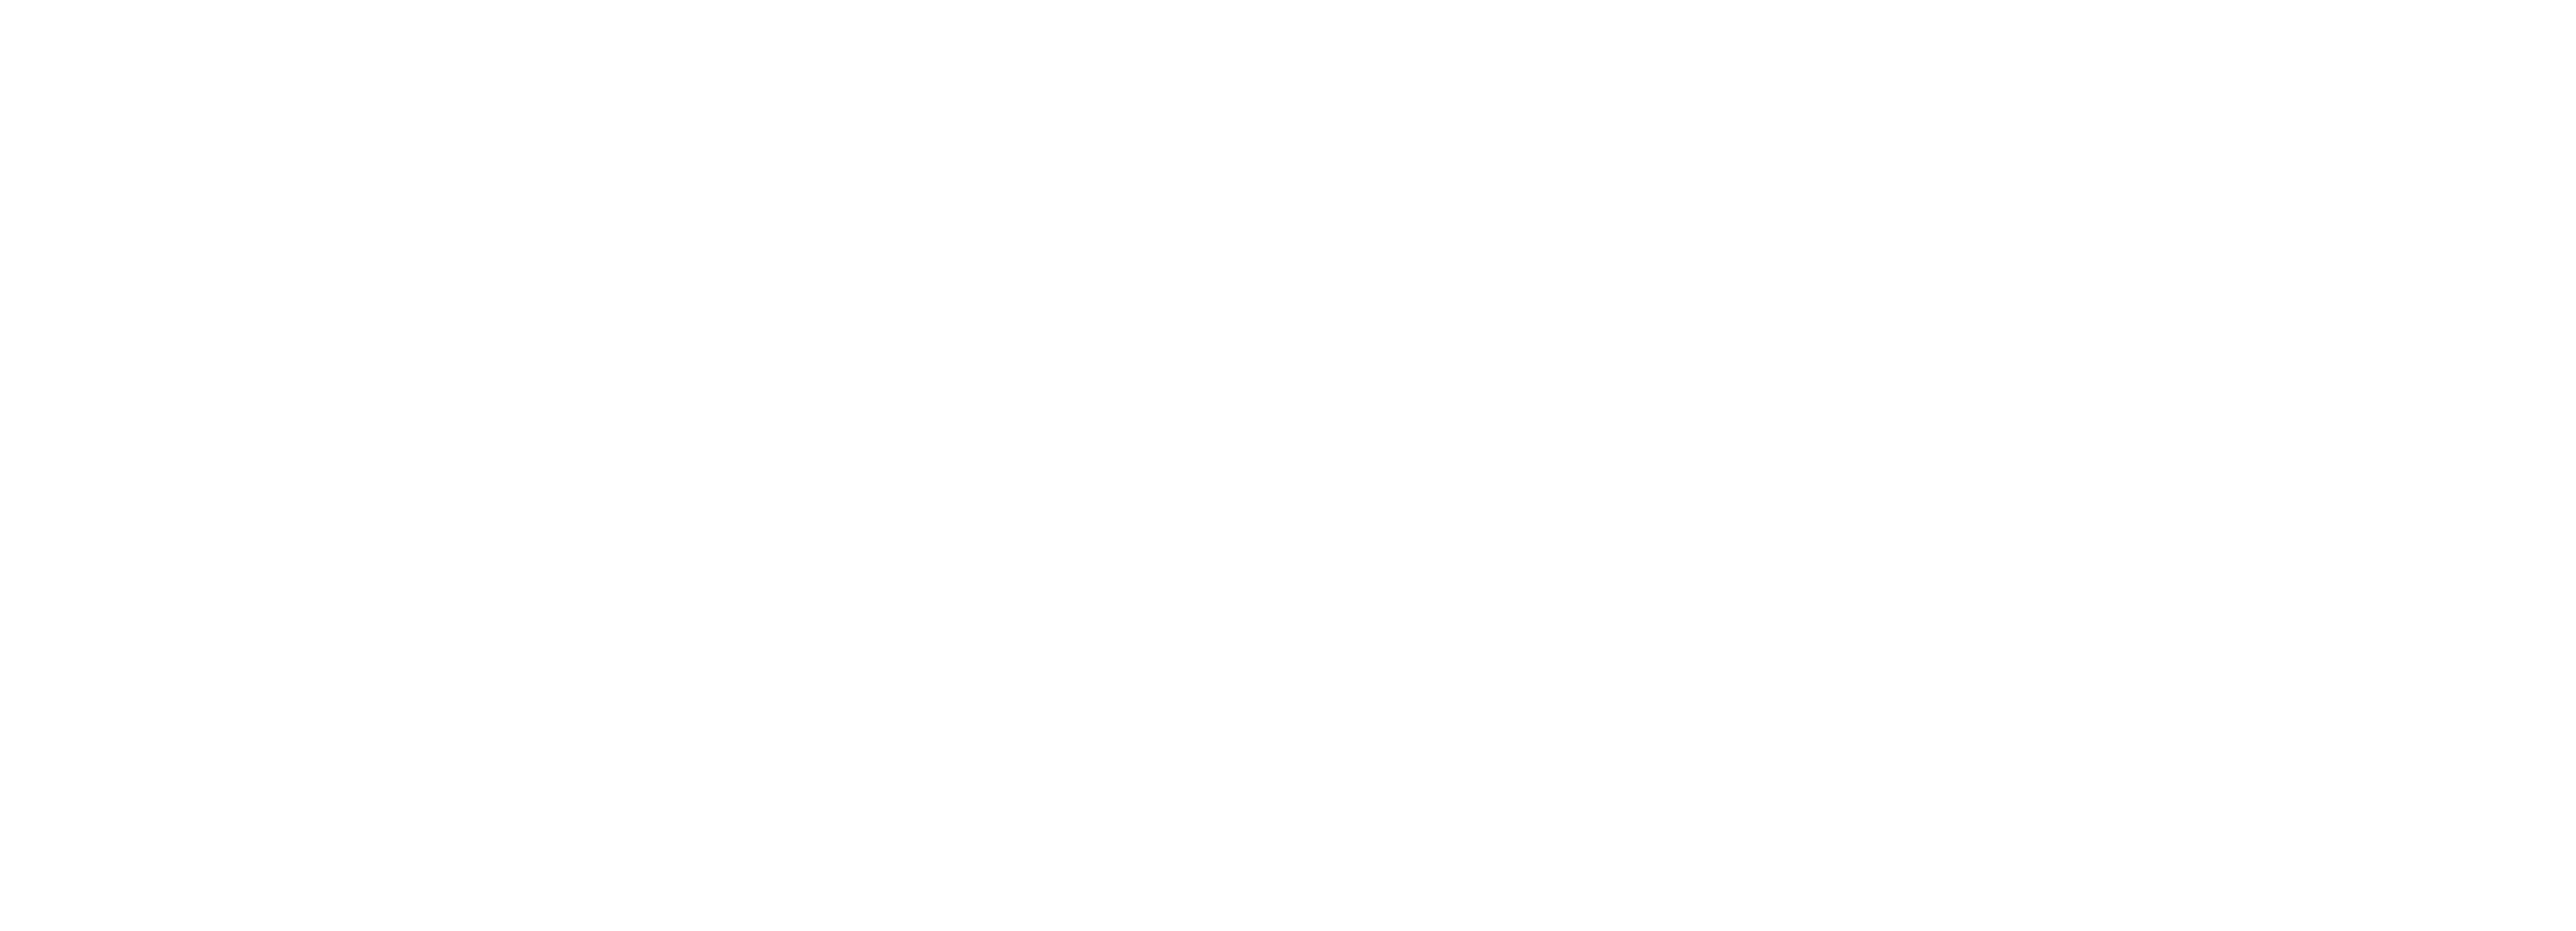 Handicap International - Stop Bombing Civilians